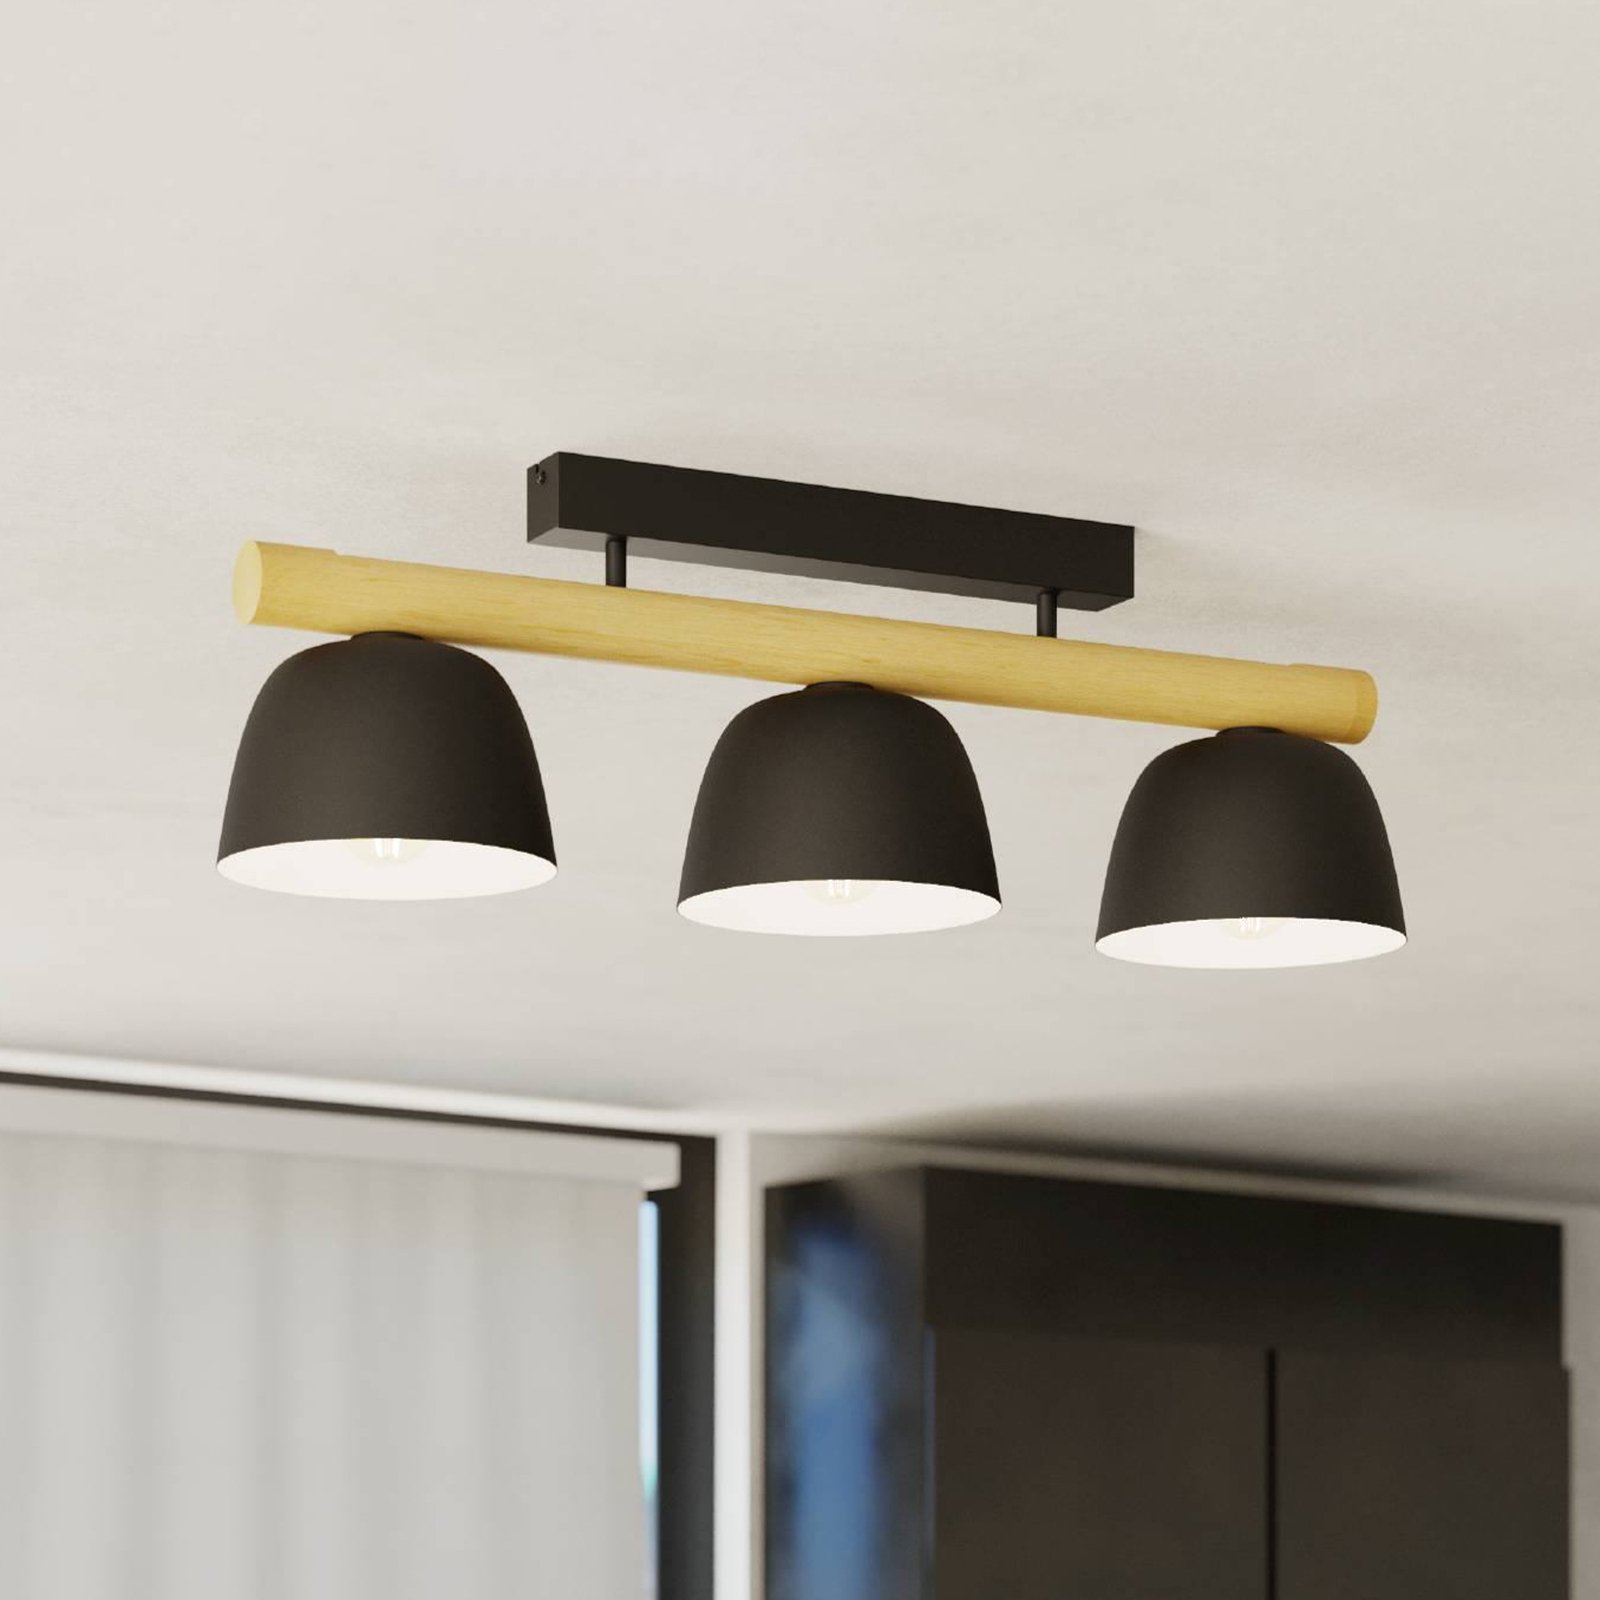 Sherburn ceiling light, length 80 cm, black/brown, 3-bulb.